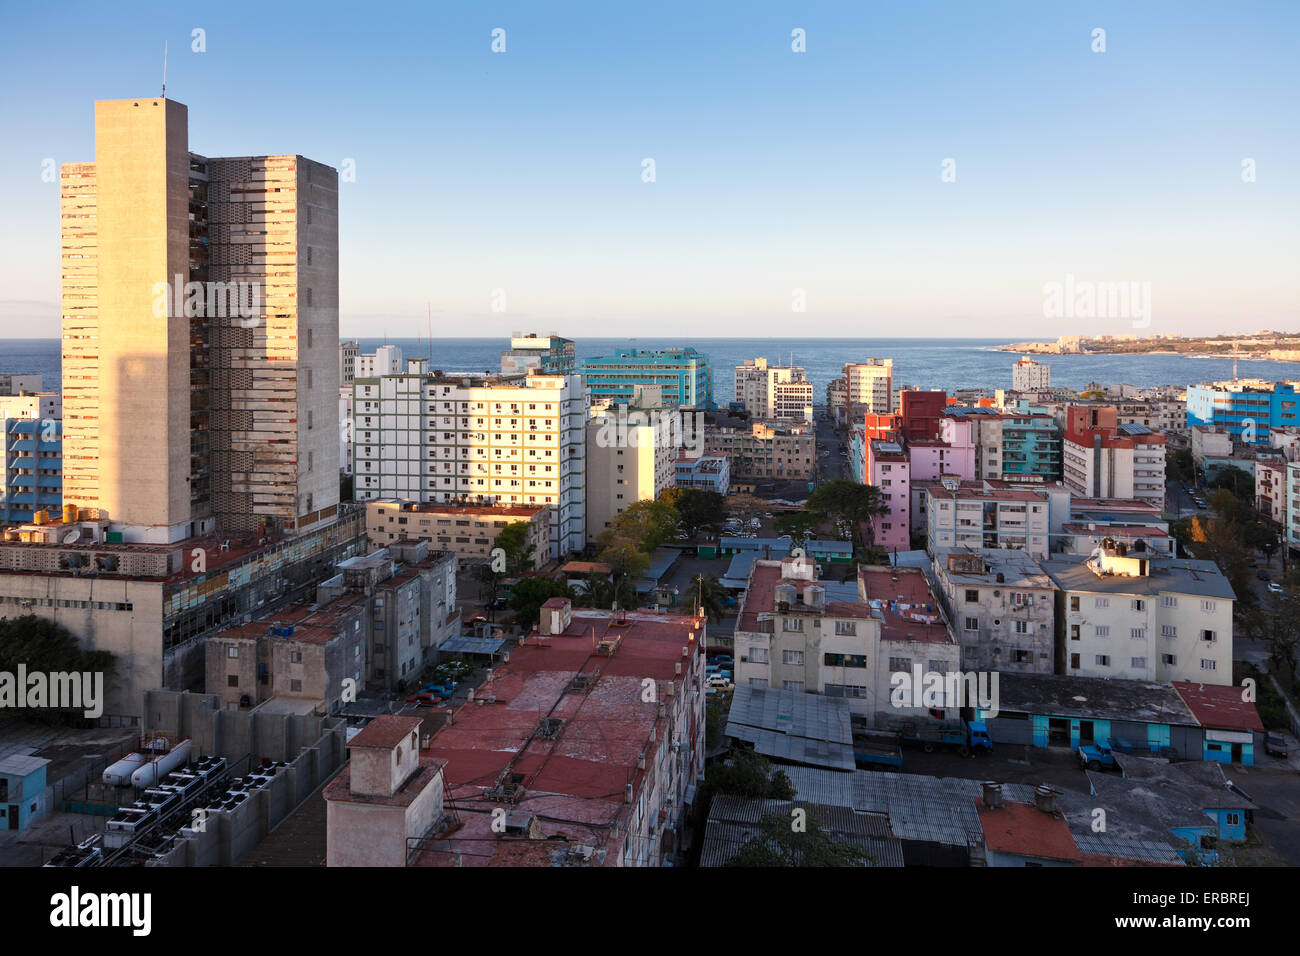 Panorama from hotel Tryp Habana Libre, Havana, Cuba Stock Photo